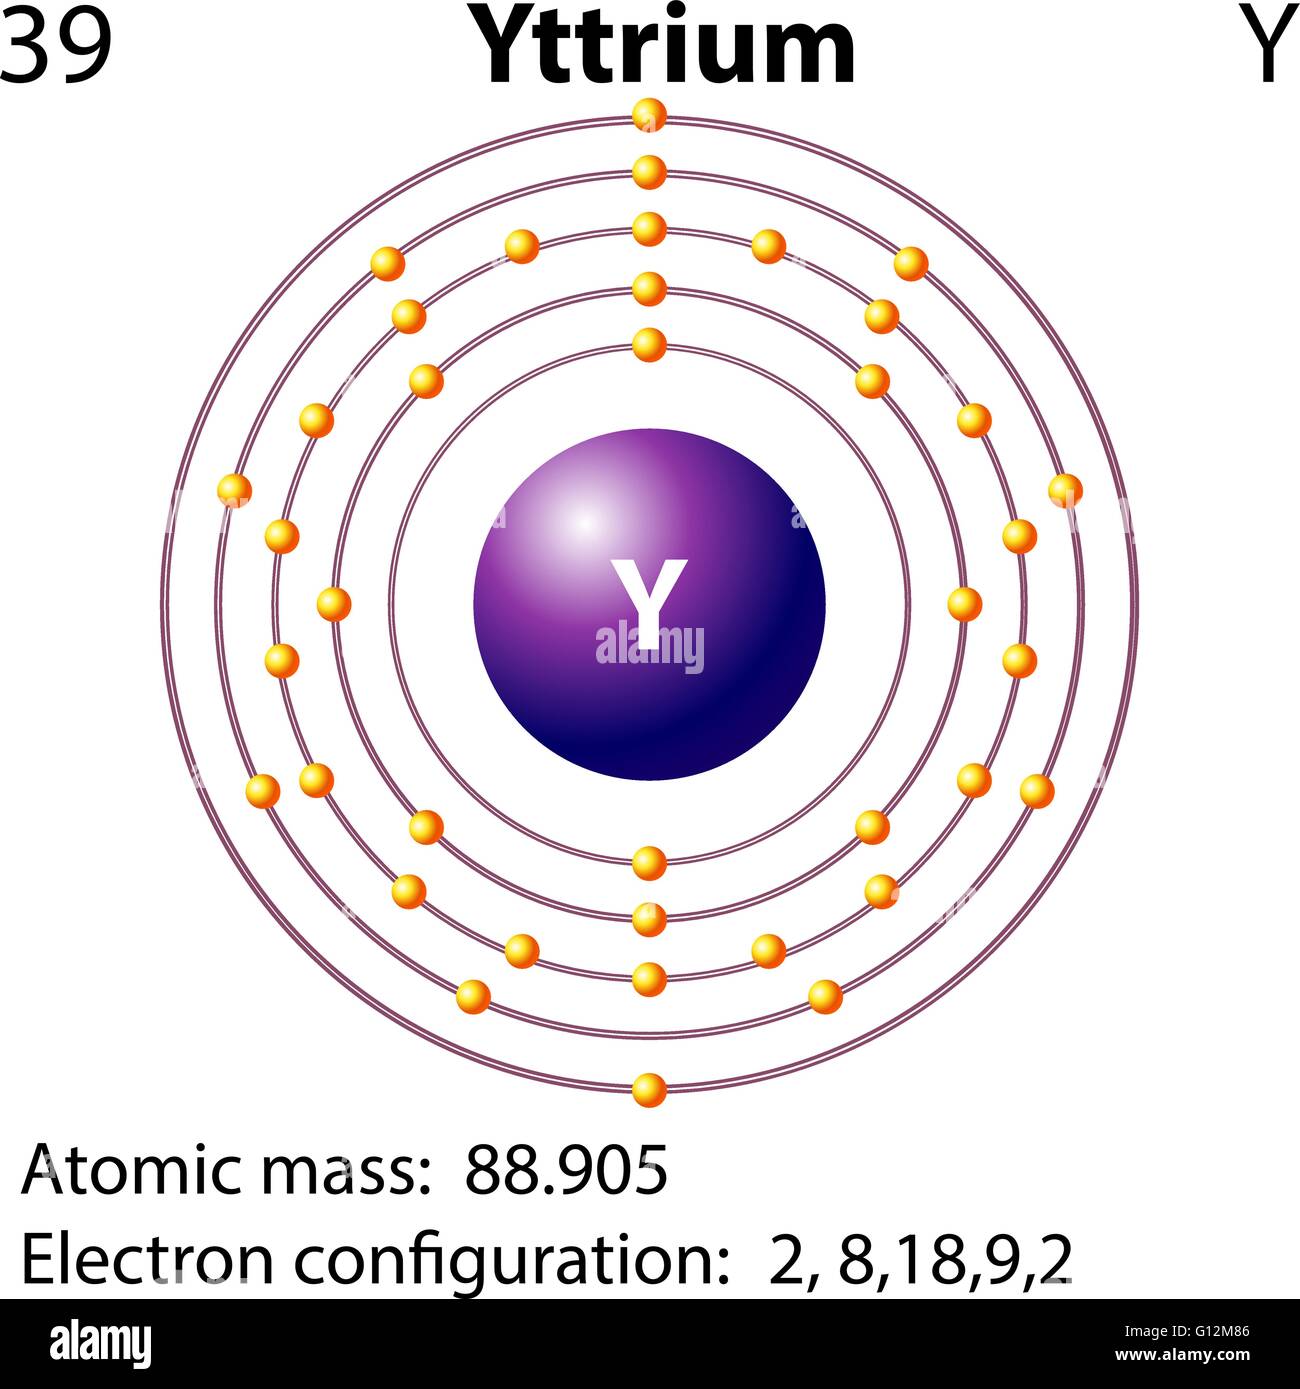 Symbol-Elektron-Diagramm zur Veranschaulichung von Yttrium Stock Vektor